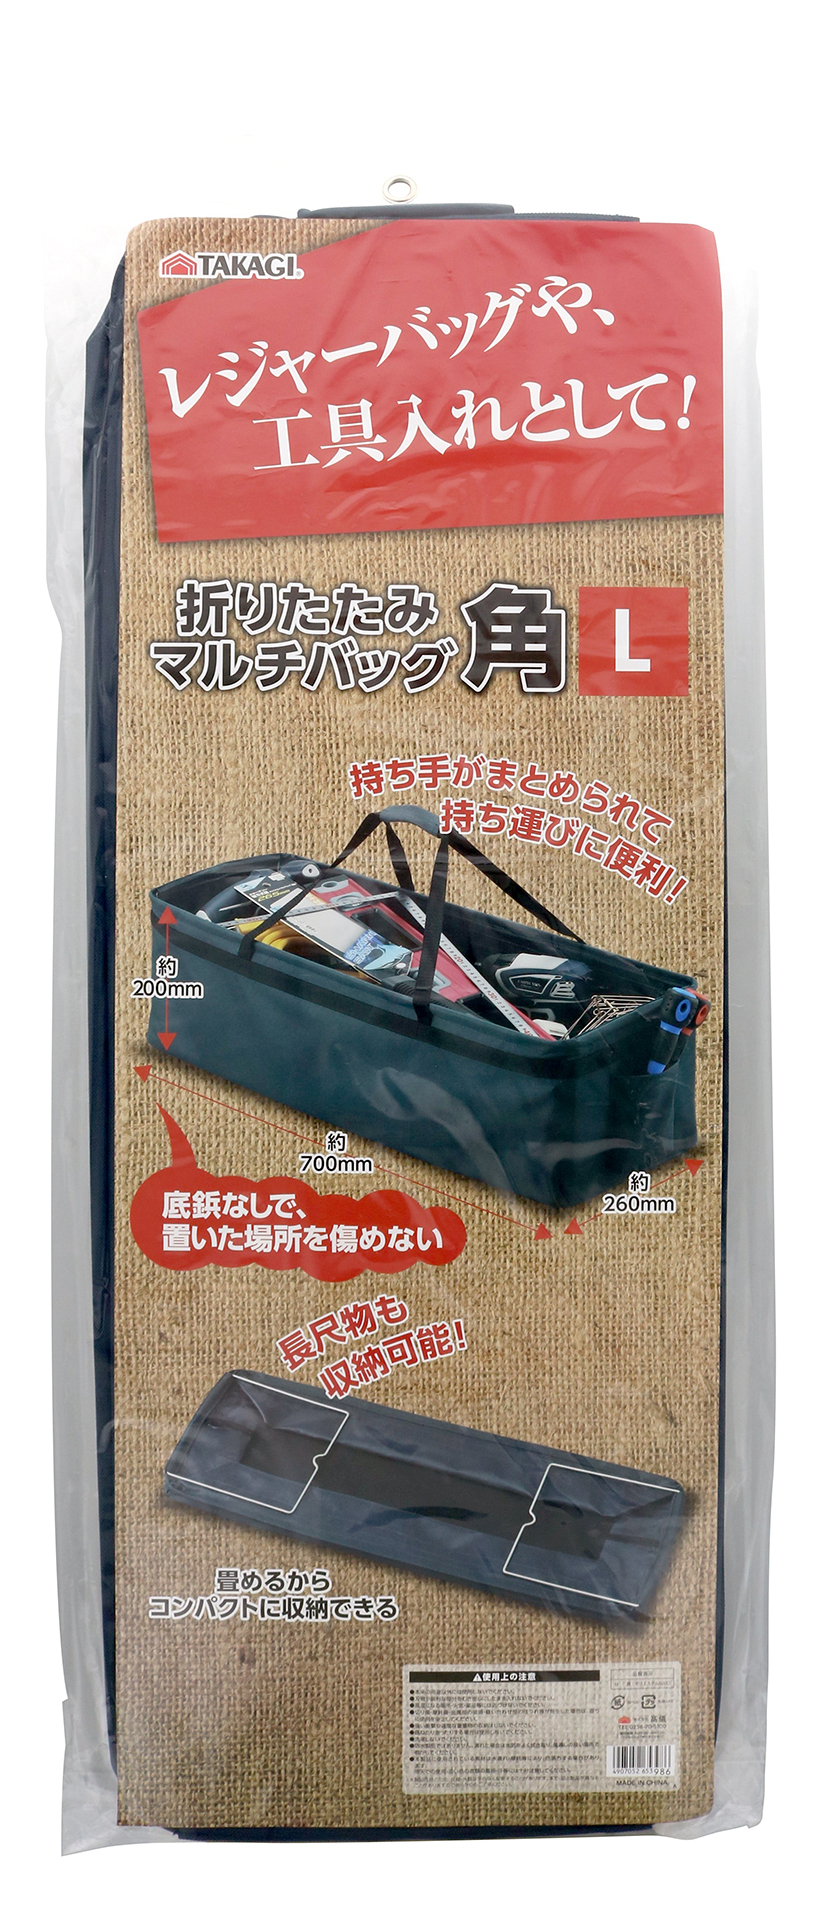 703円 2021新作モデル 高儀 TAKAGI ウエストキャッチャー ブラック